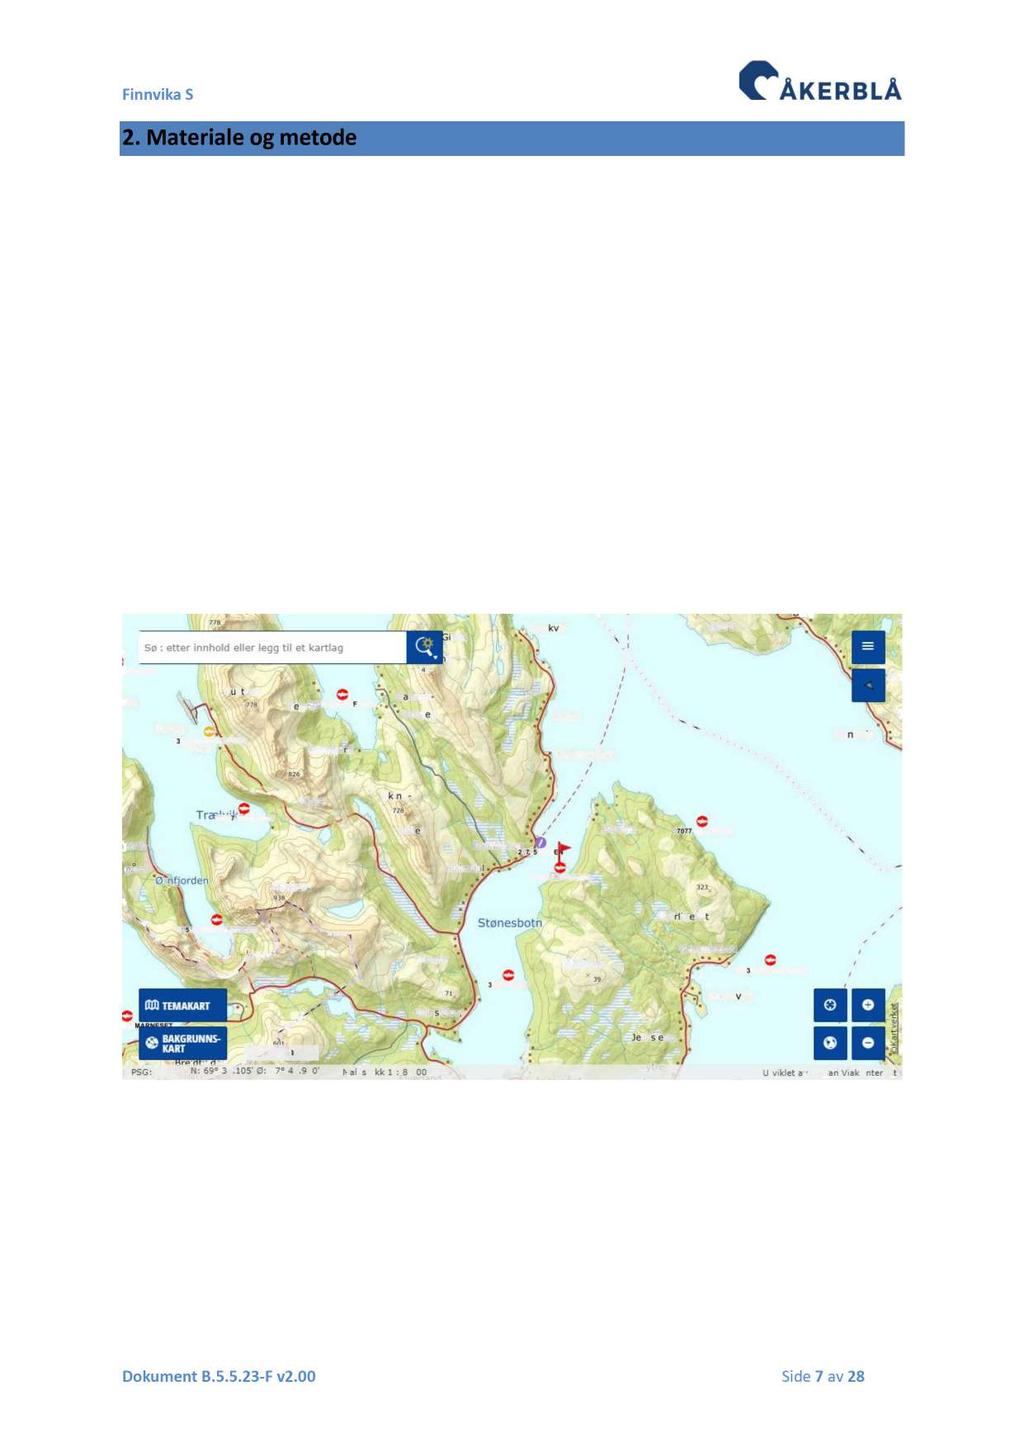 2. Mater iale og metode Lokaliteten Finnvika S ligger i Stønesbotn, Lenvik Kommune i Tromsø. Nærmere beskrevet ligger lokaliteten ligger rett sørøst for tettstedet Botnhamn på nordsiden av øya Senja.